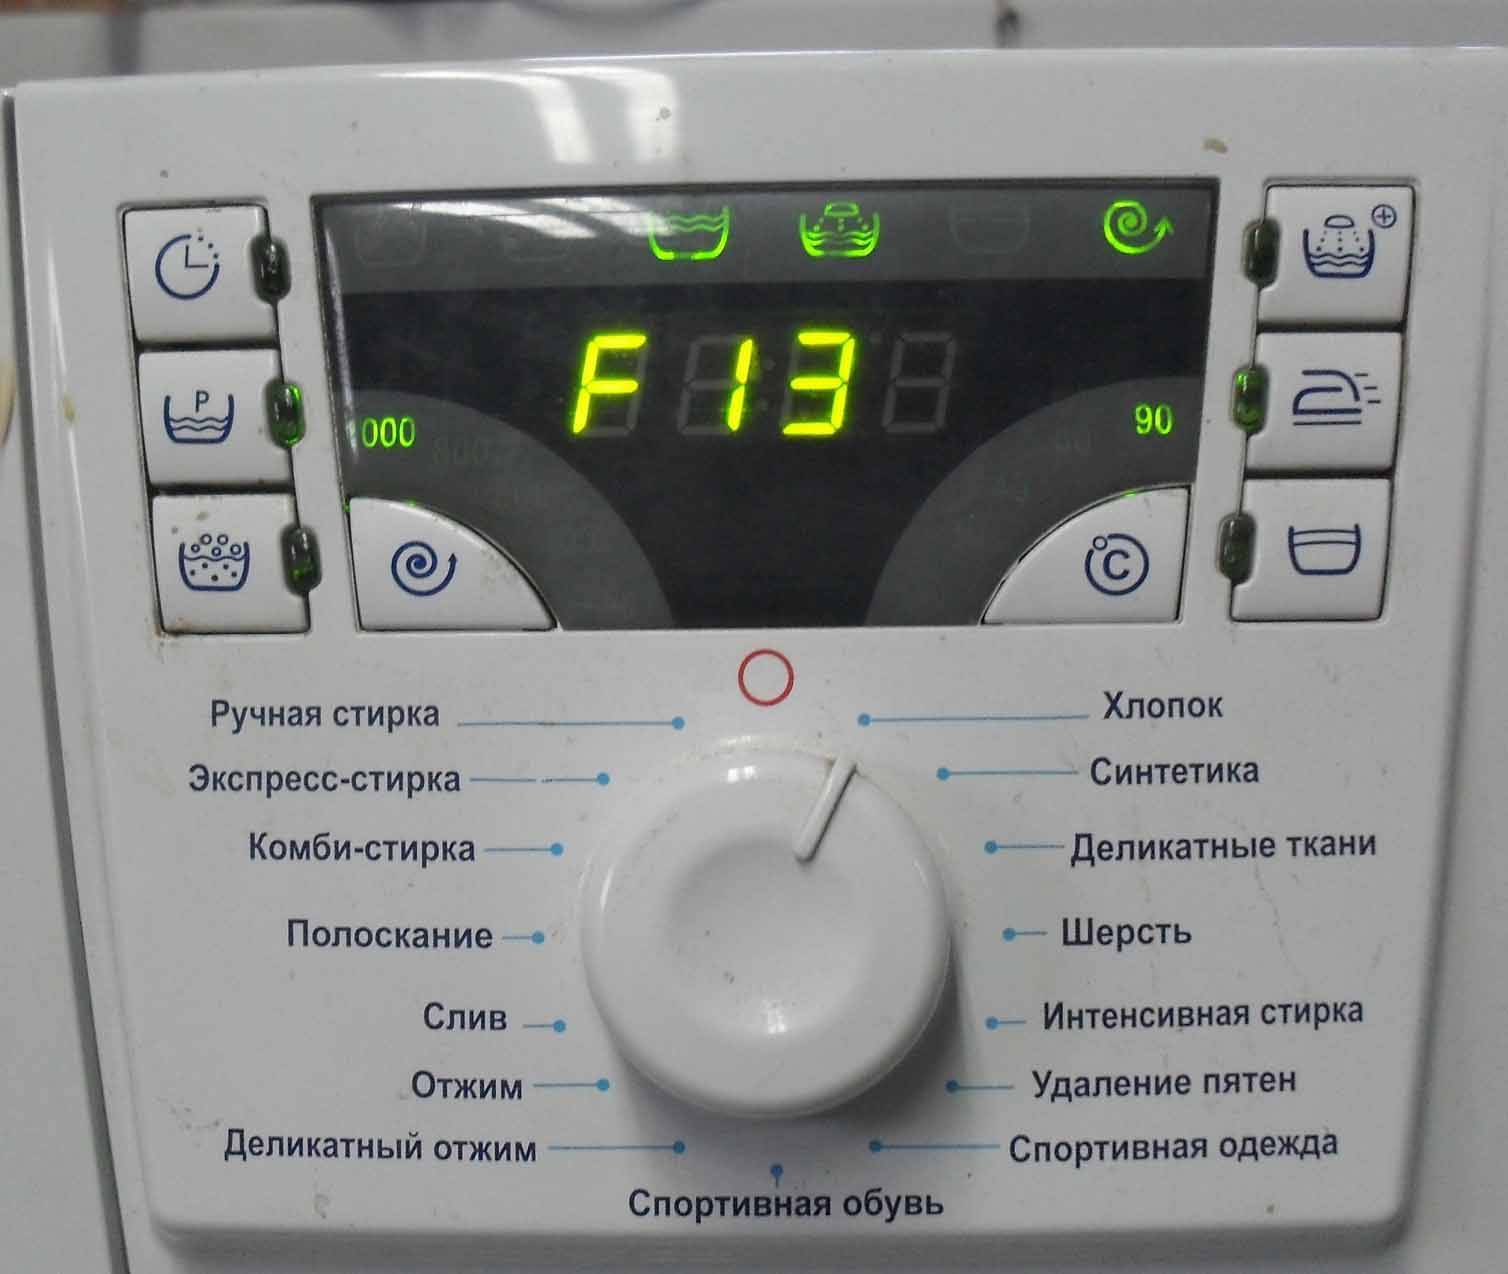 Ошибка f13 стиральной машины атлант: что означает код ф13, как провести диагностику, обнаружить и исправить неполадку в работе?